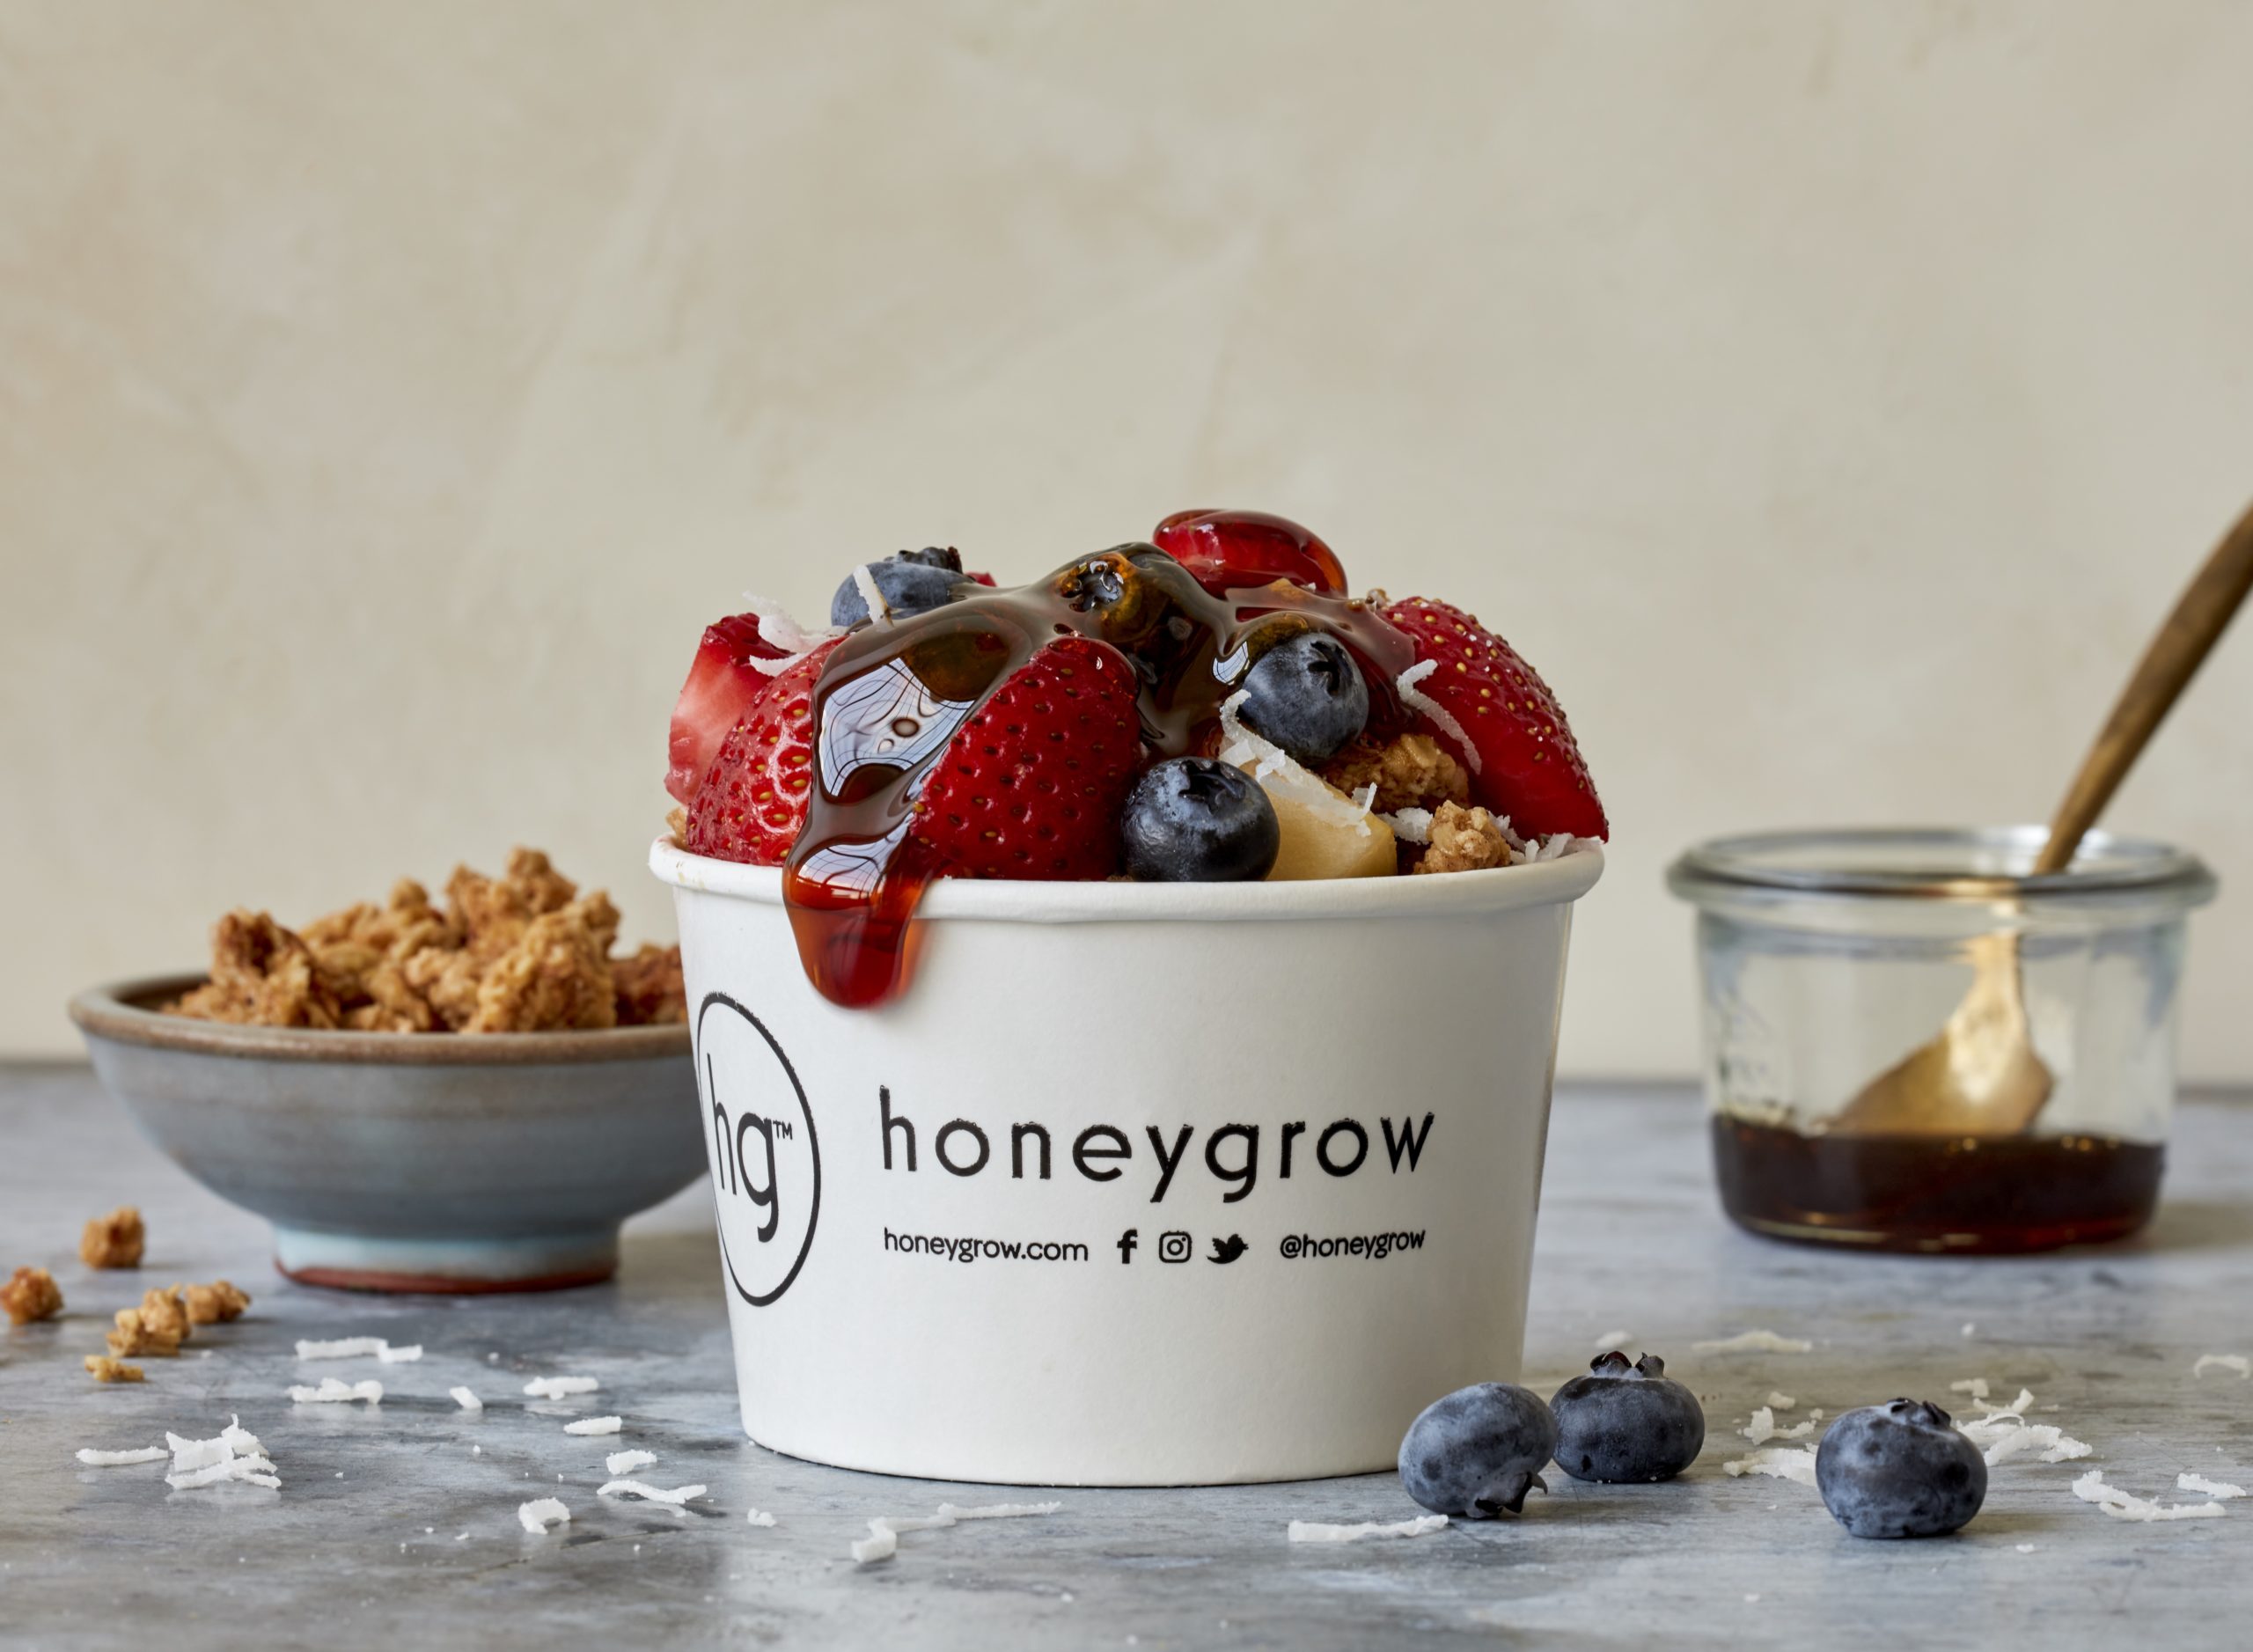 fructe și granola honeybar disponibile la o strângere de fonduri pentru producția de miere